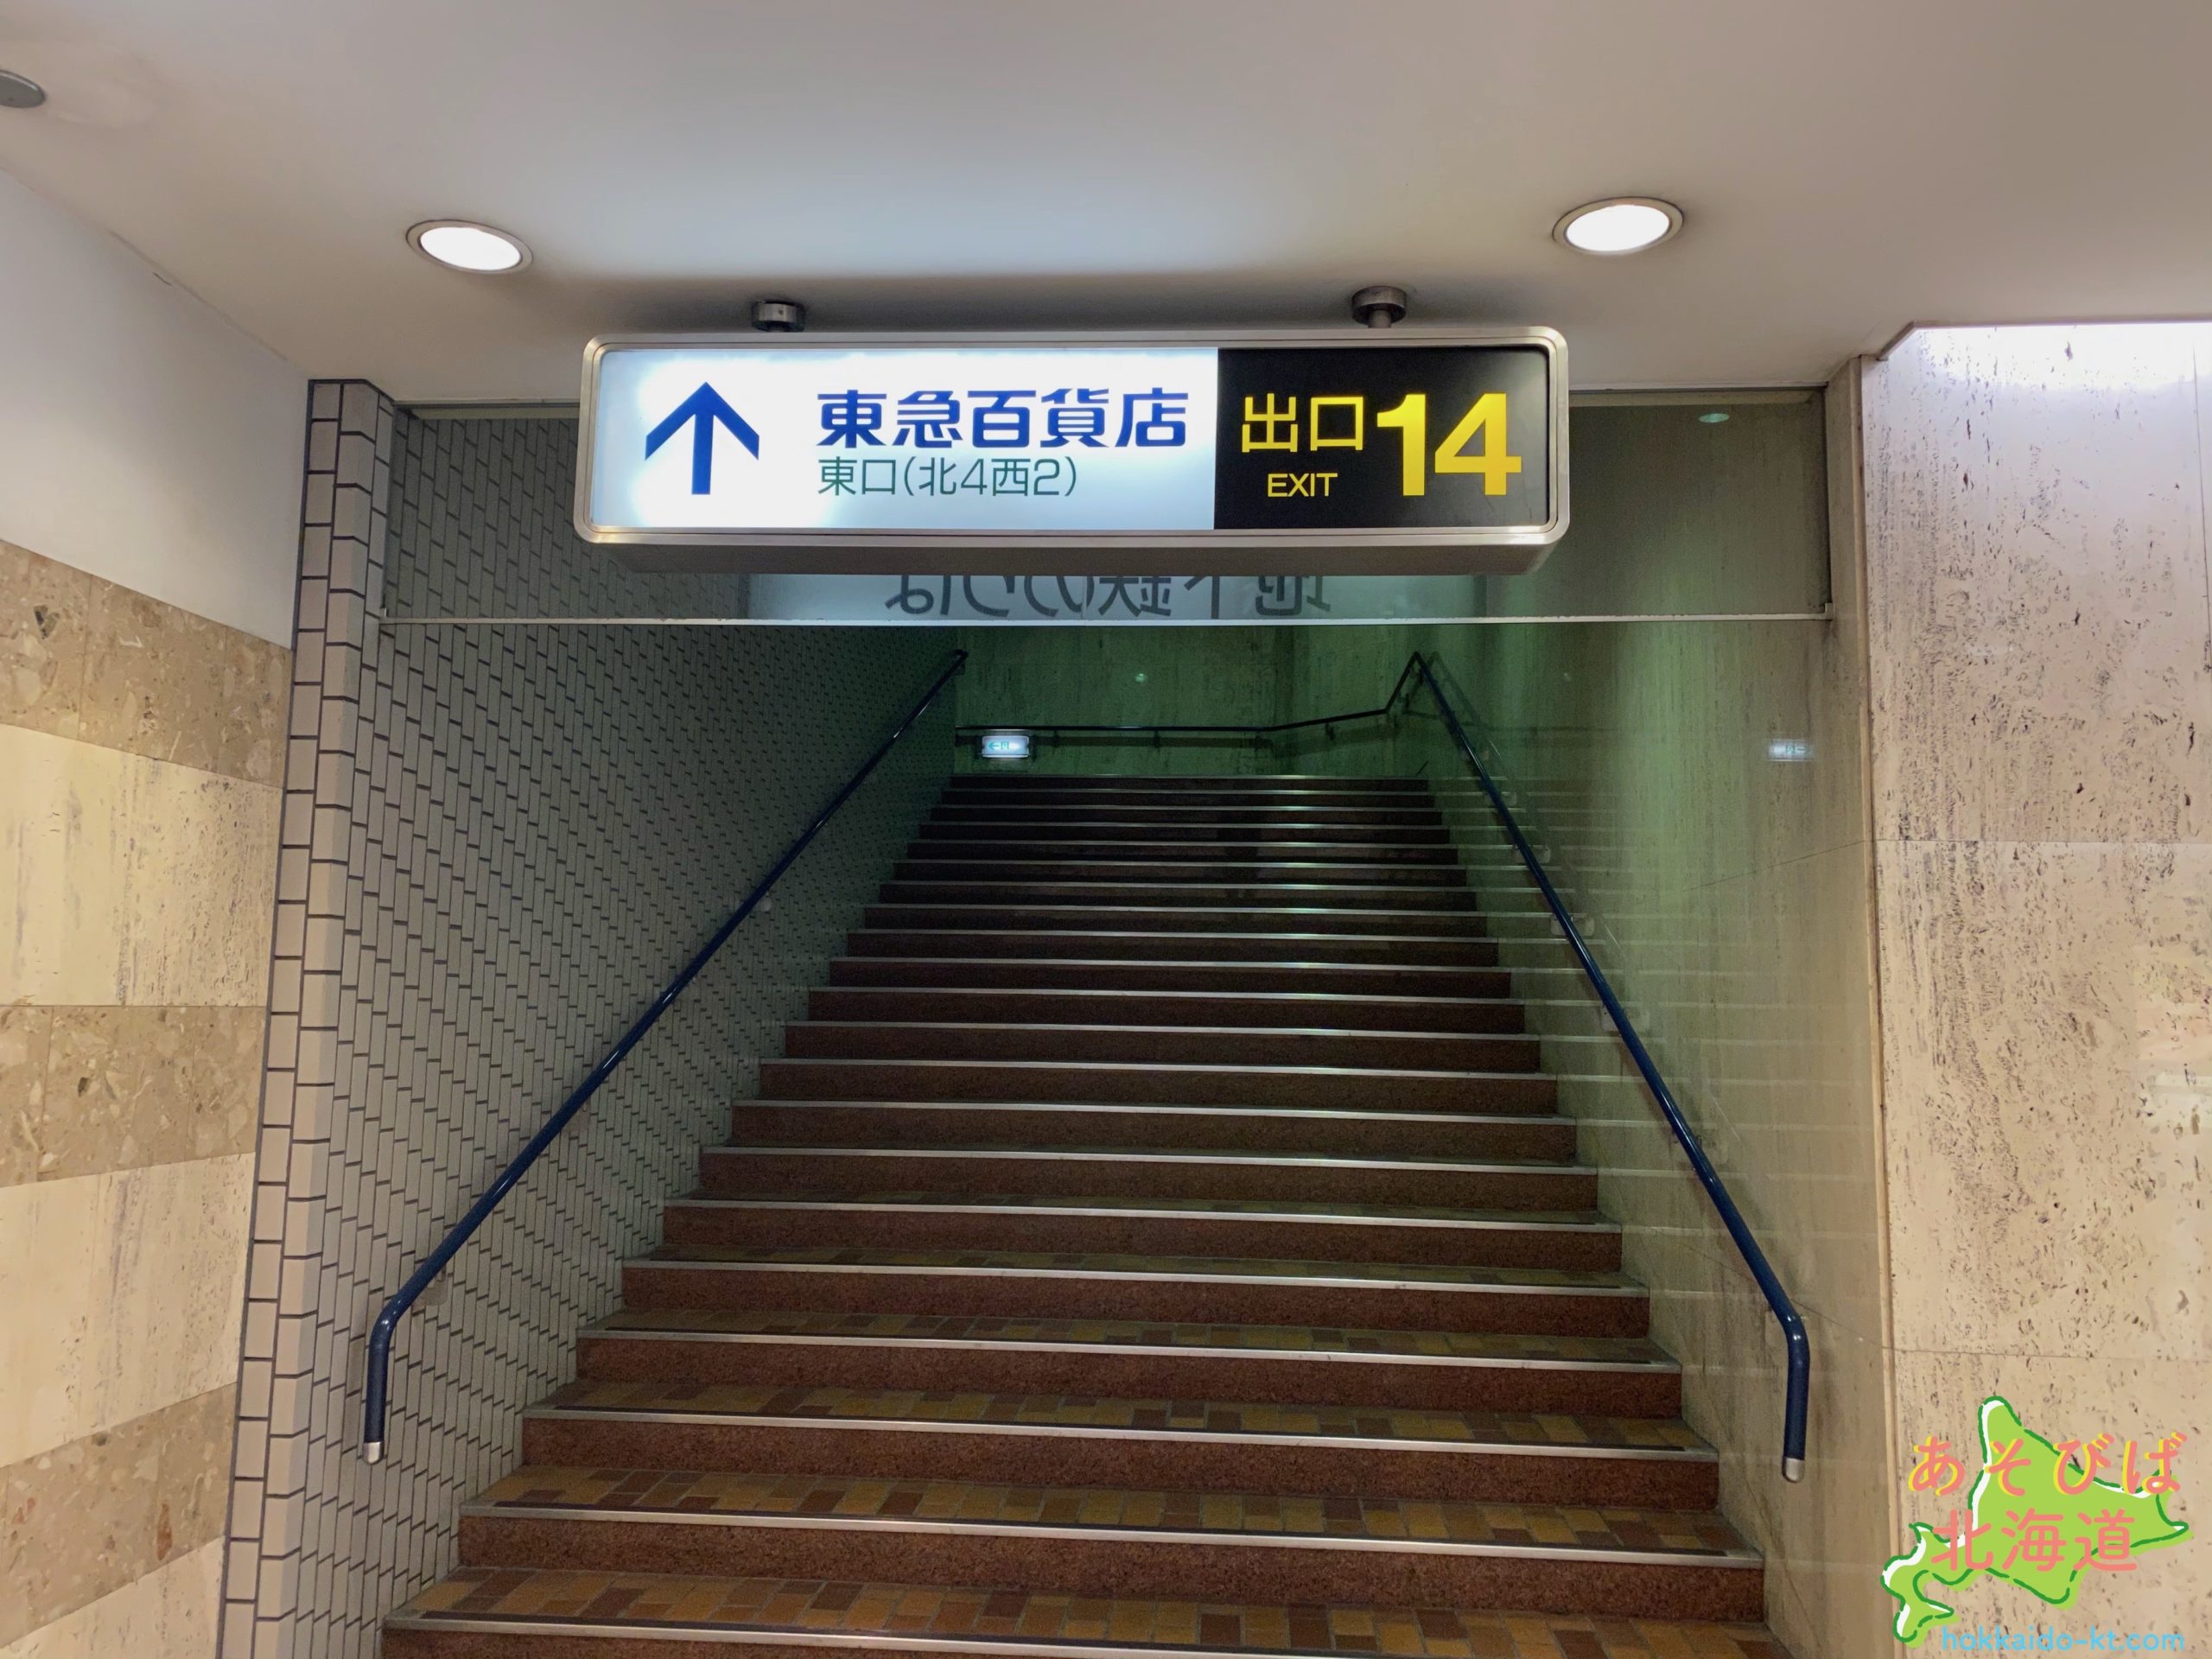 札幌駅14番出口